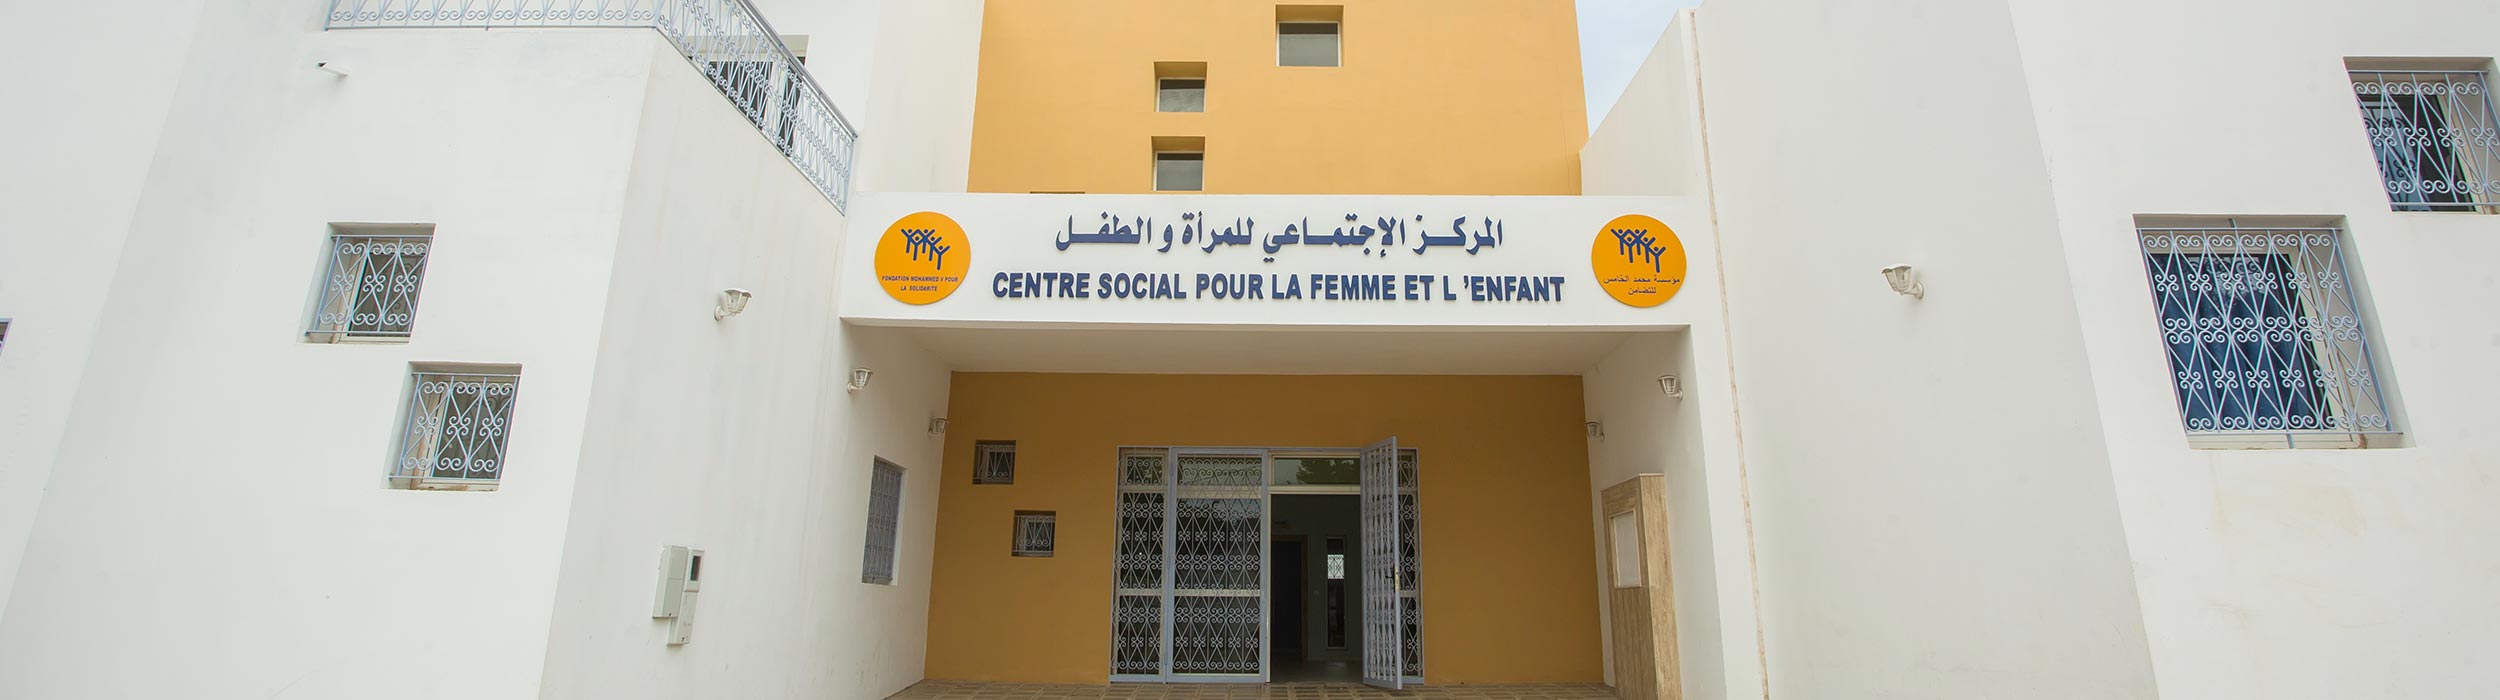 Social Center for Woman and Child Al Youssoufia - Rabat